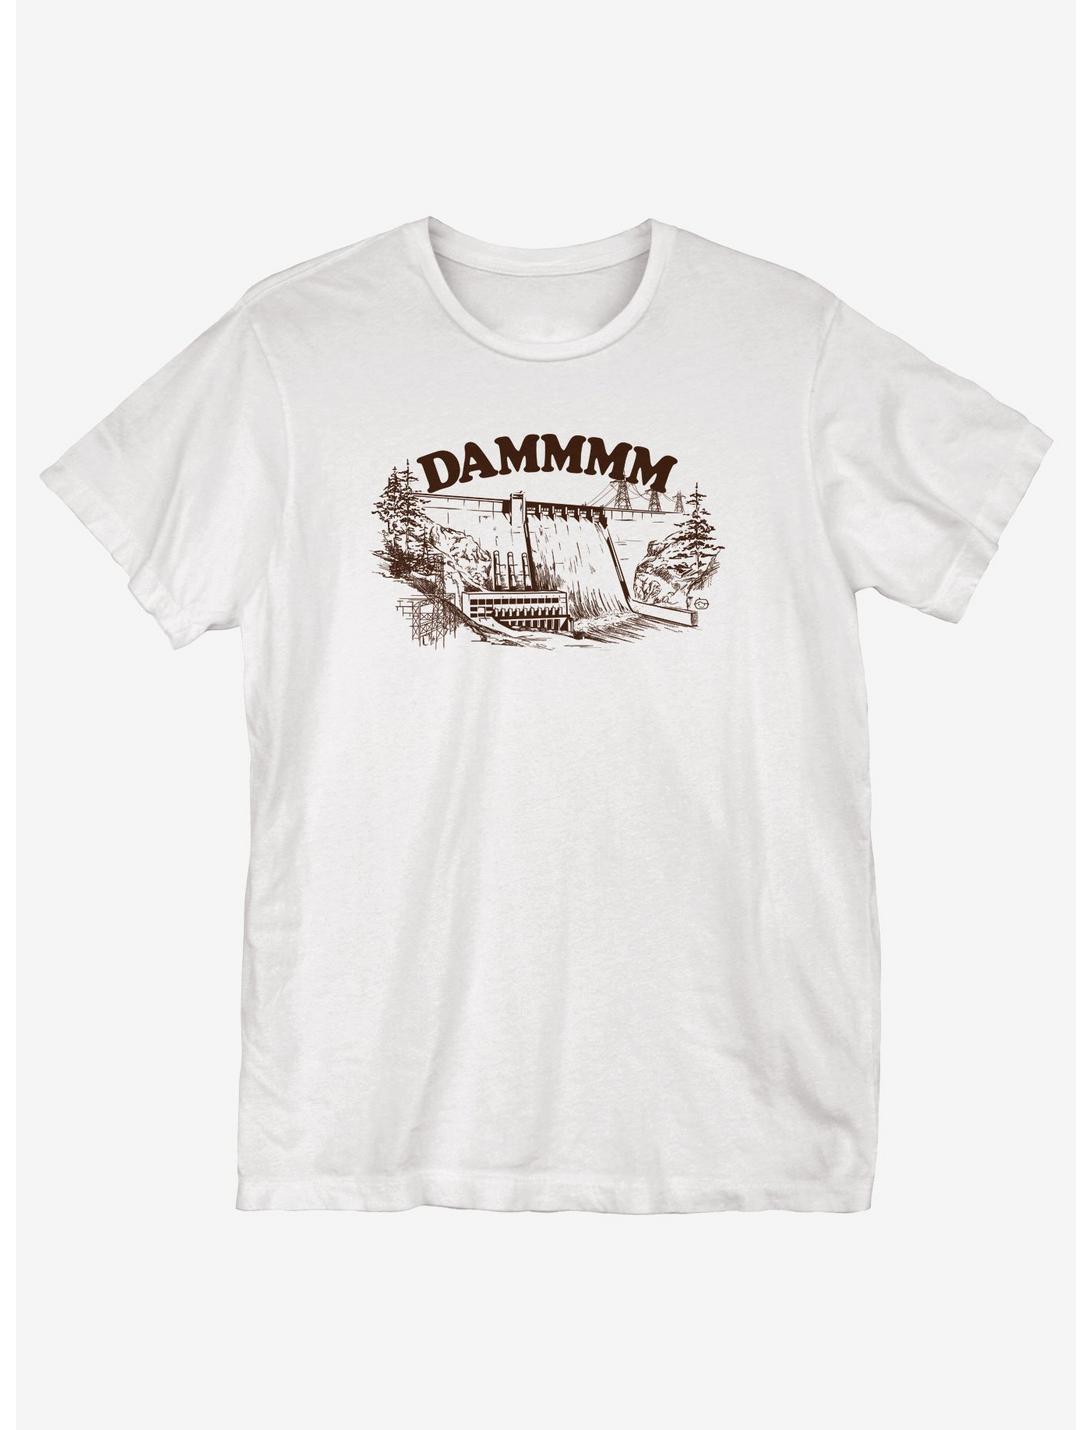 Dammmm T-Shirt, WHITE, hi-res